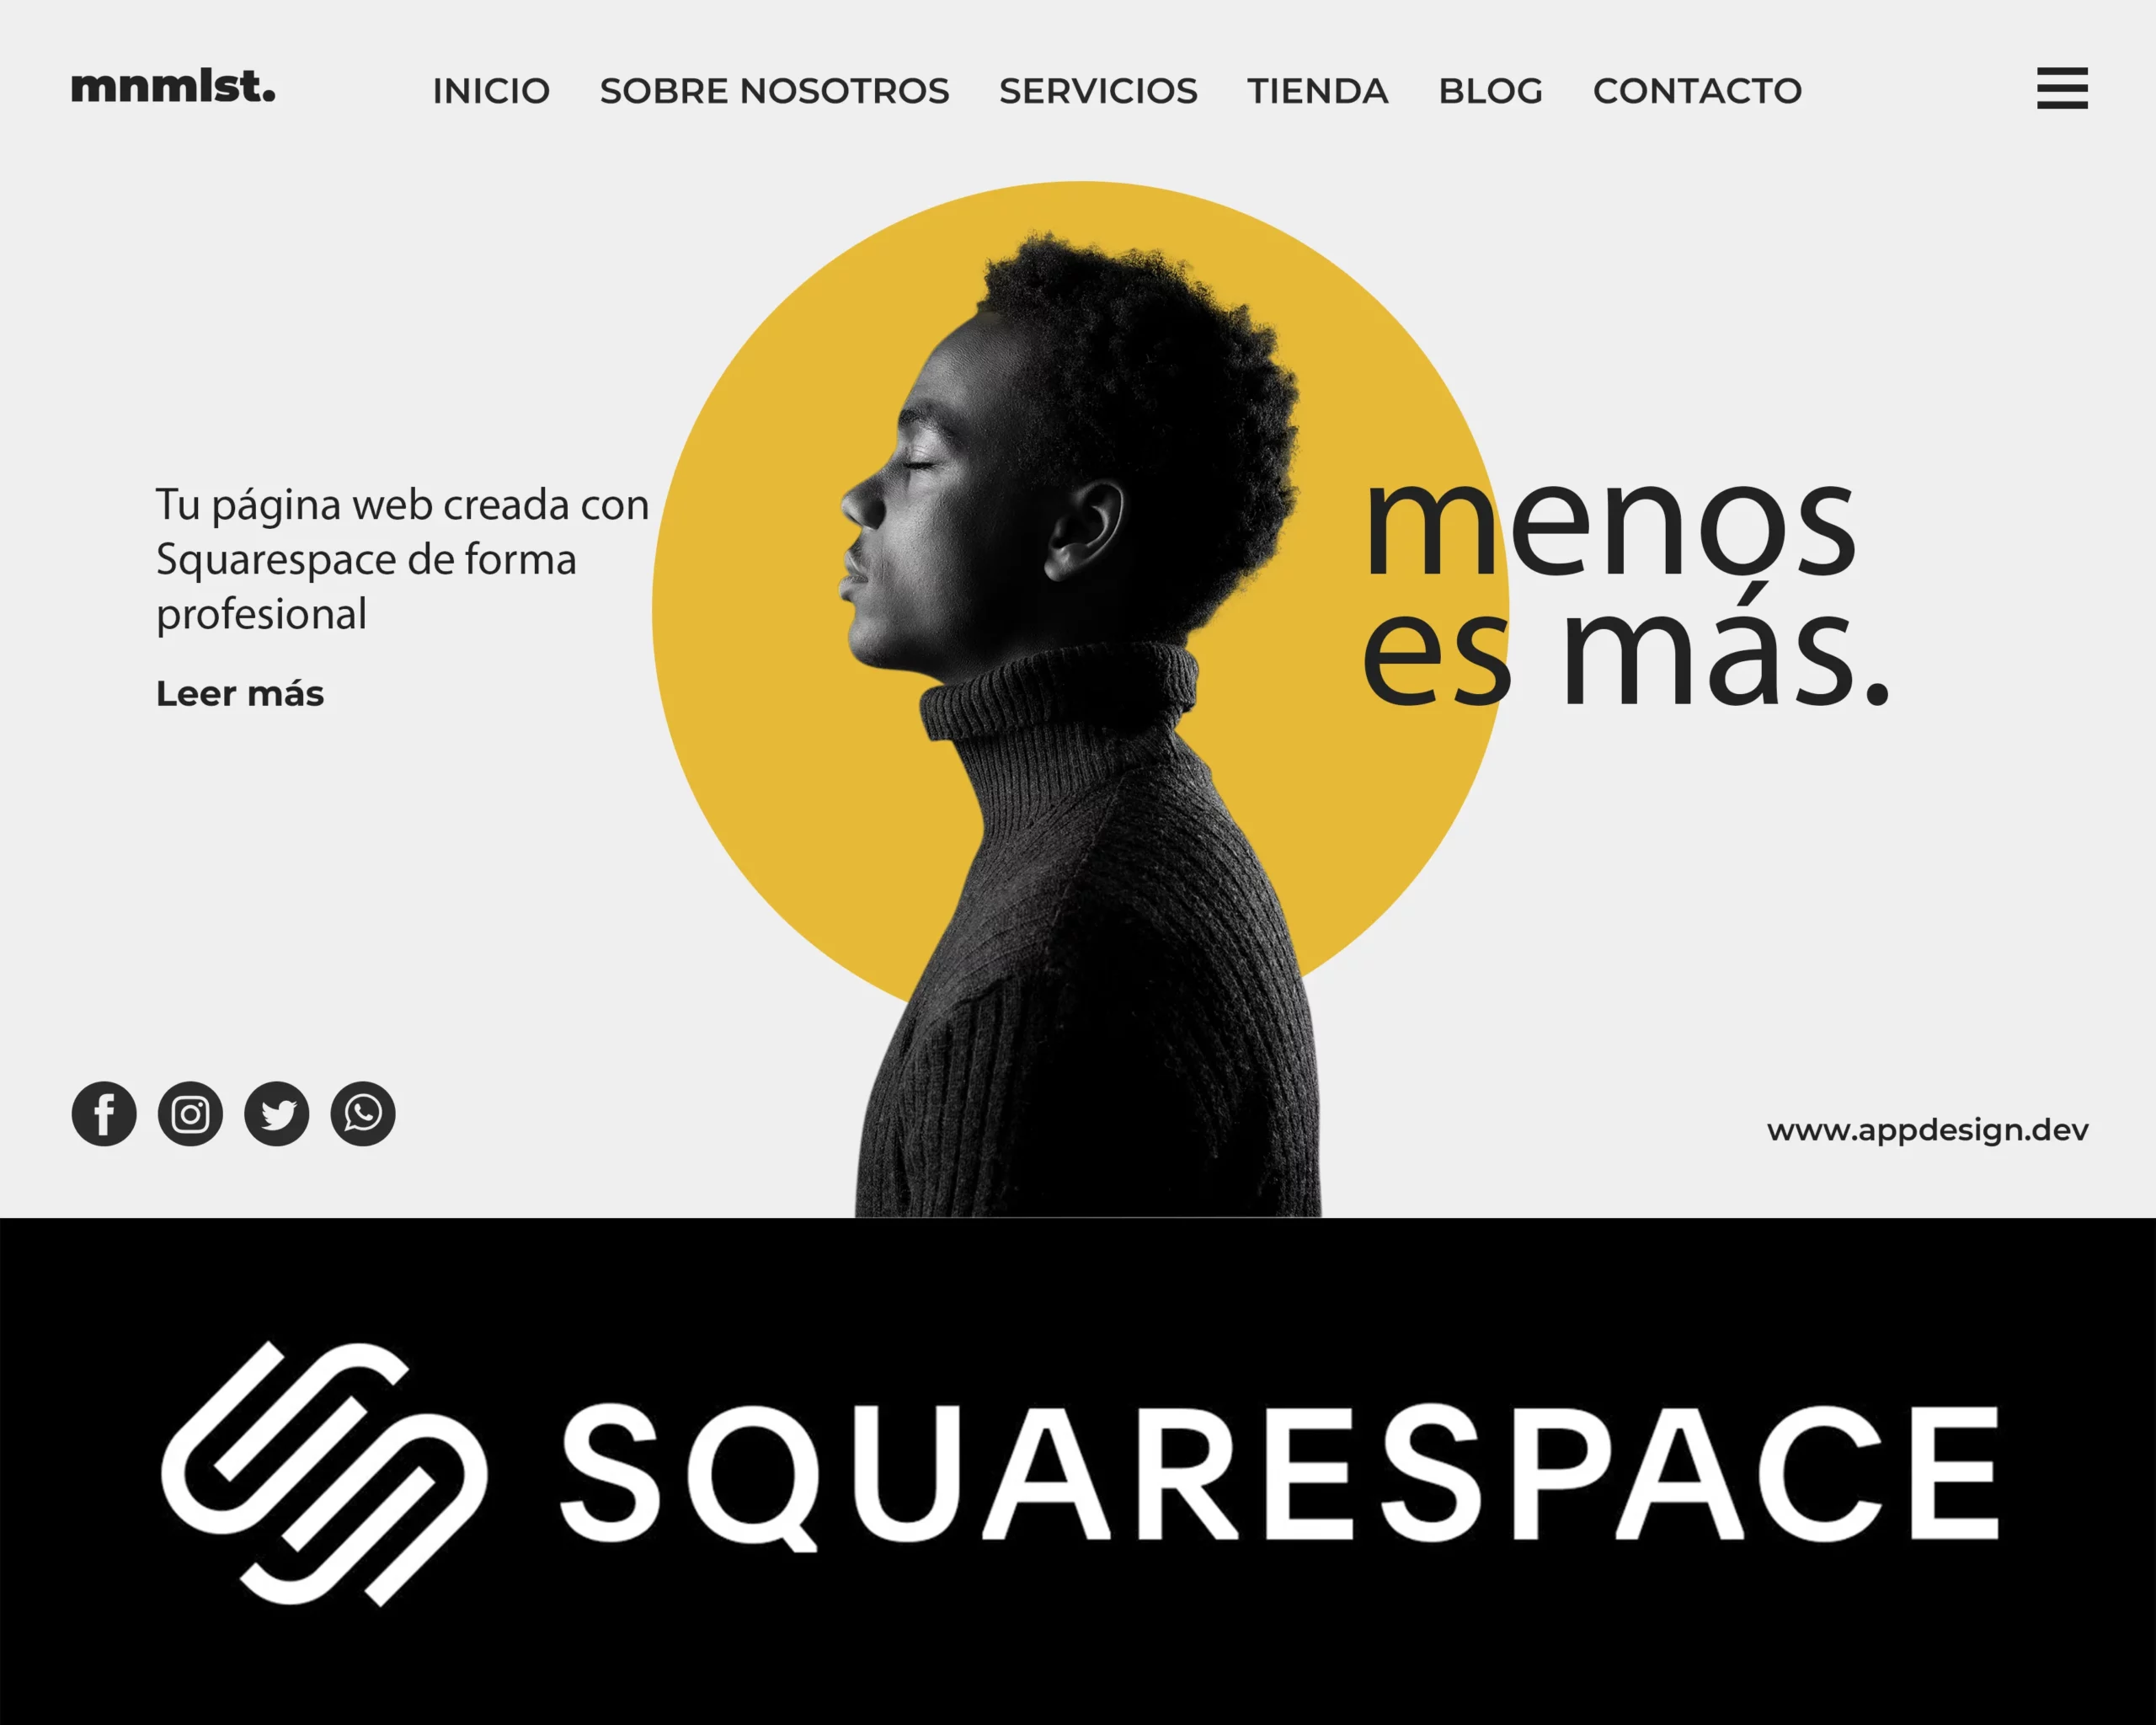 designer do squarespace